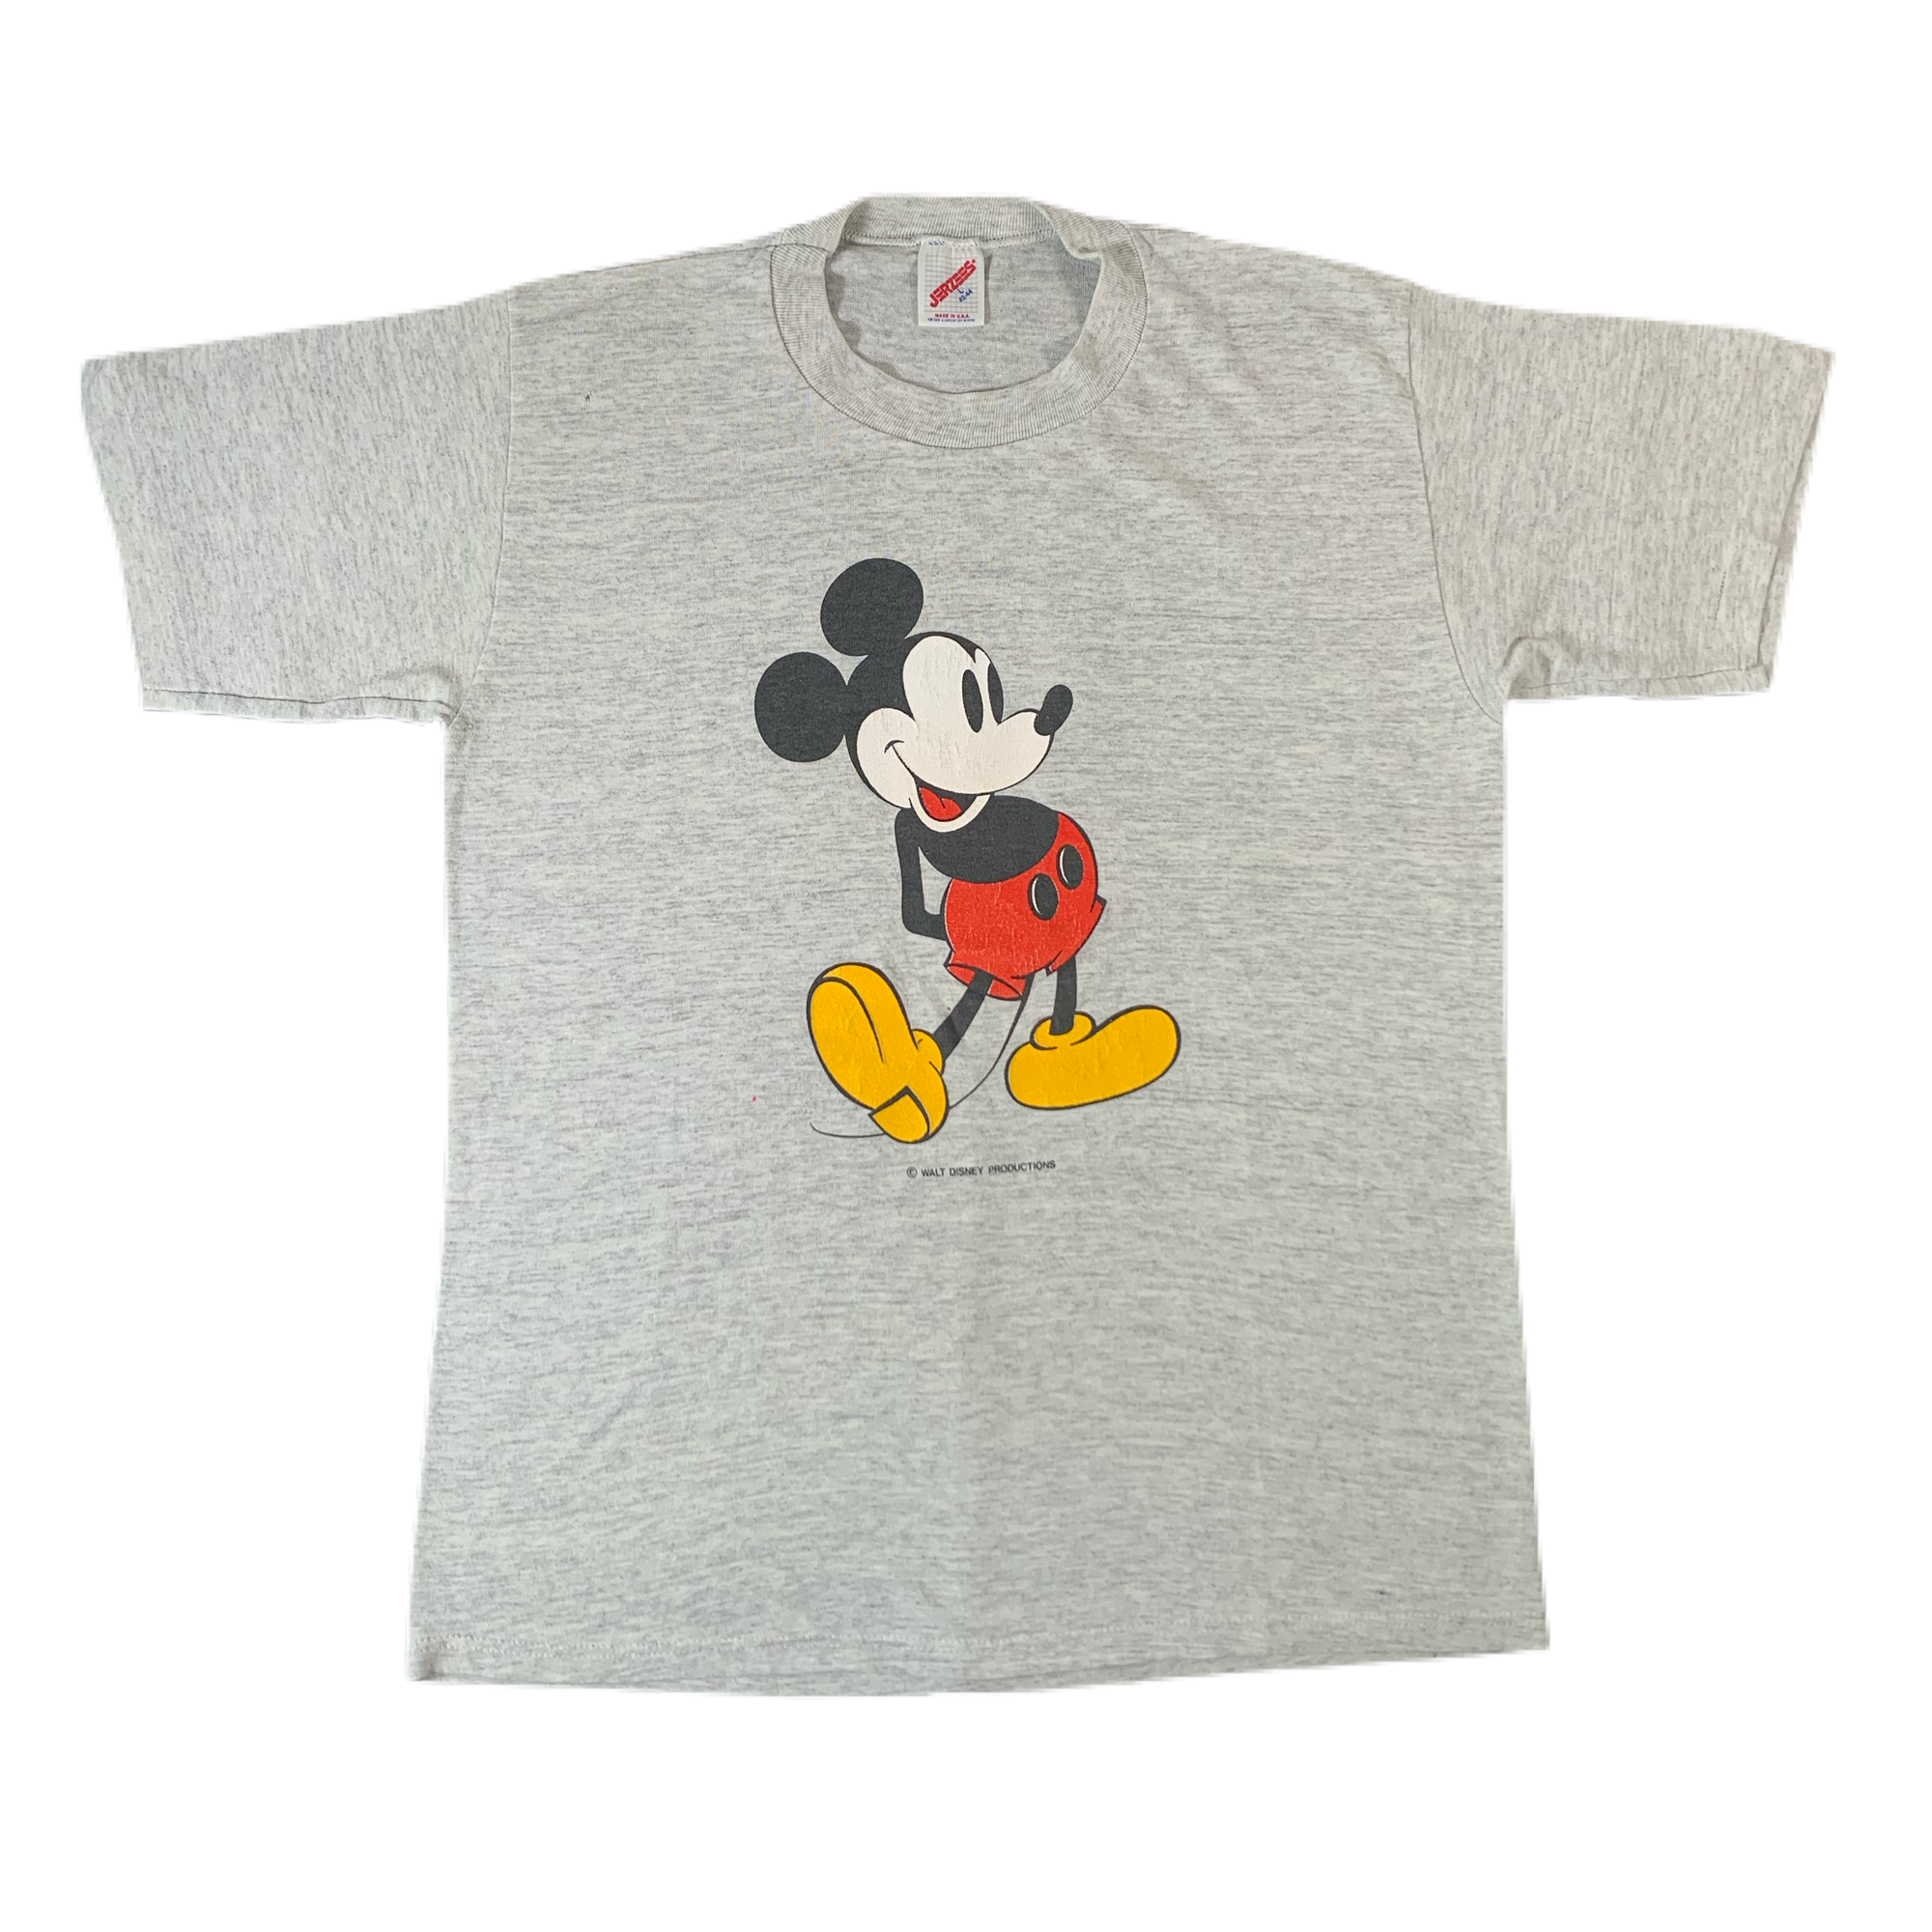 Vintage Mickey Mouse "Walt Disney" T-Shirt - jointcustodydc